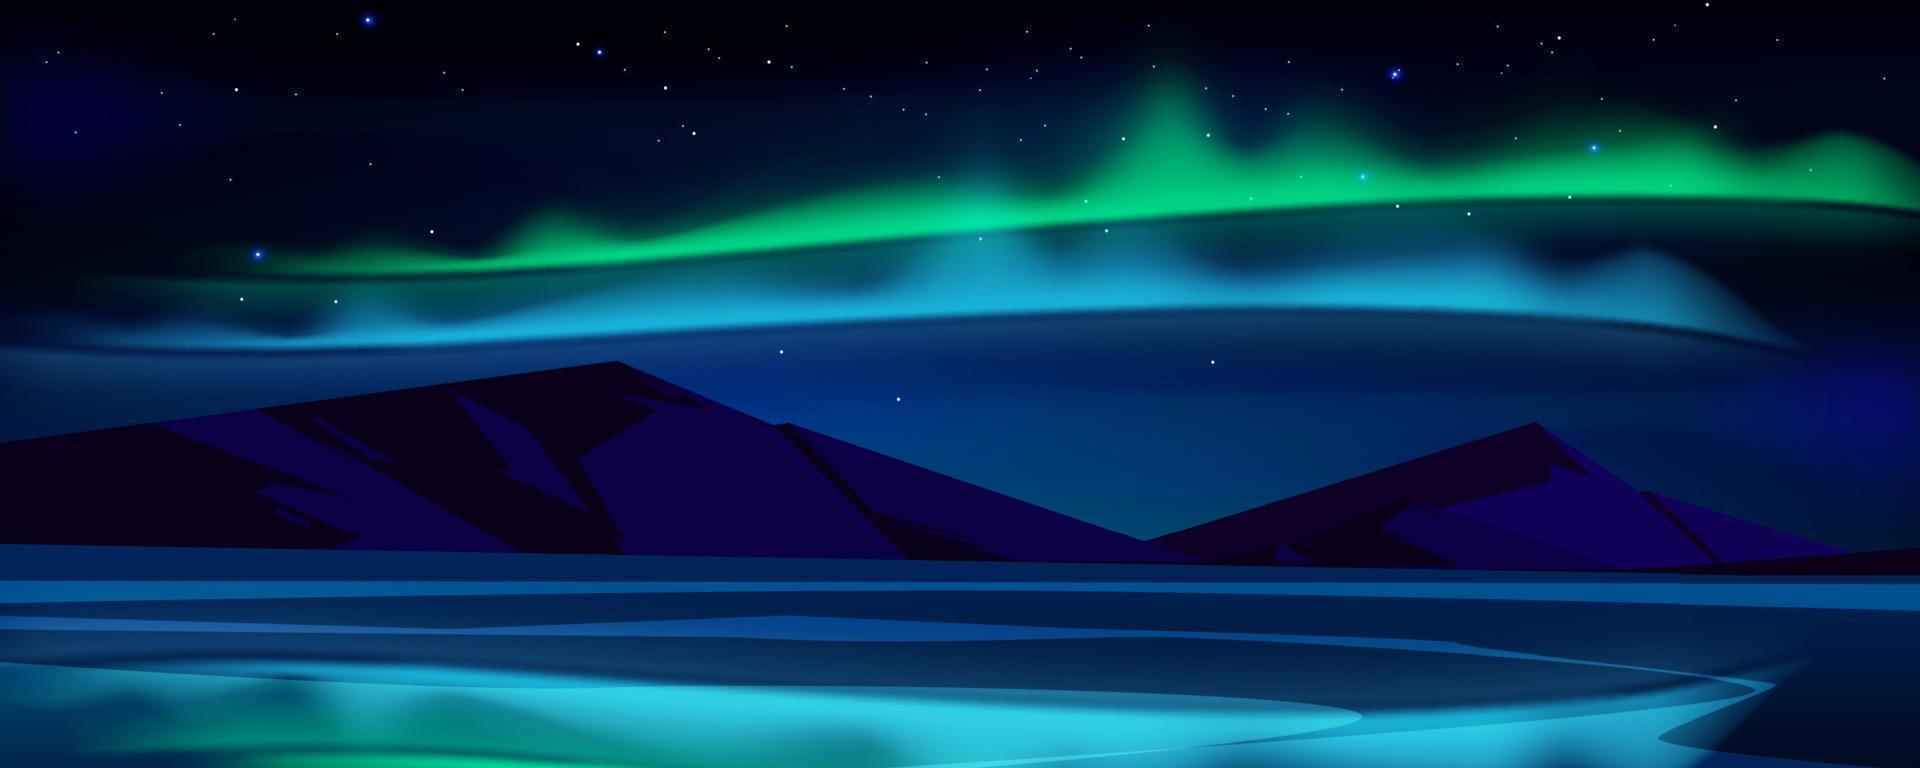 natt landskap med aurora borealis i himmel vektor